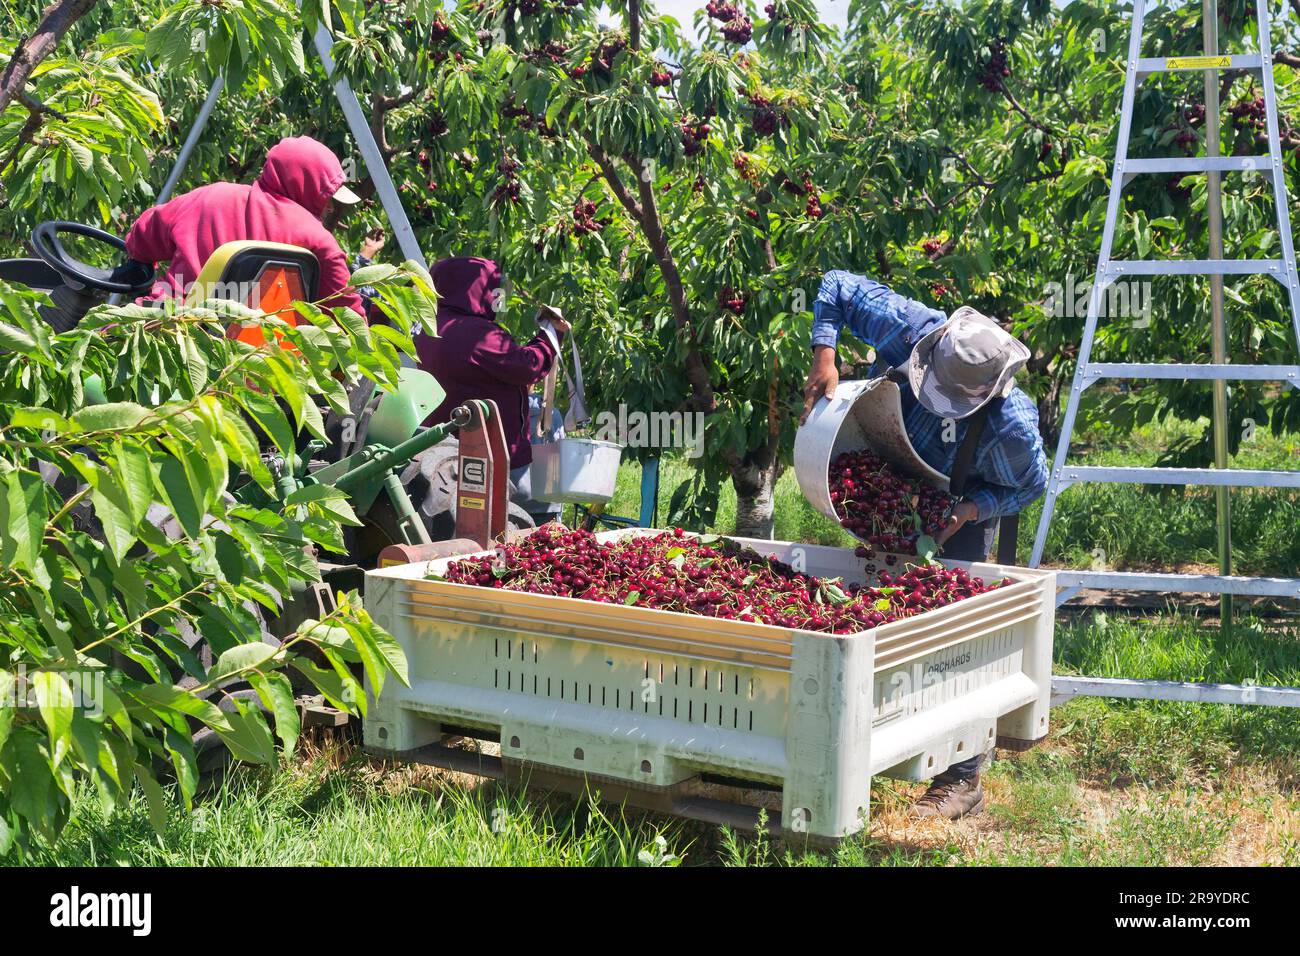 Ouvriers récoltant des cerises Royal Brooks 'Prunus avium', travailleur déposant les cerises récoltées dans la trémie, tracteur à fourche ramassant la récolte. Banque D'Images